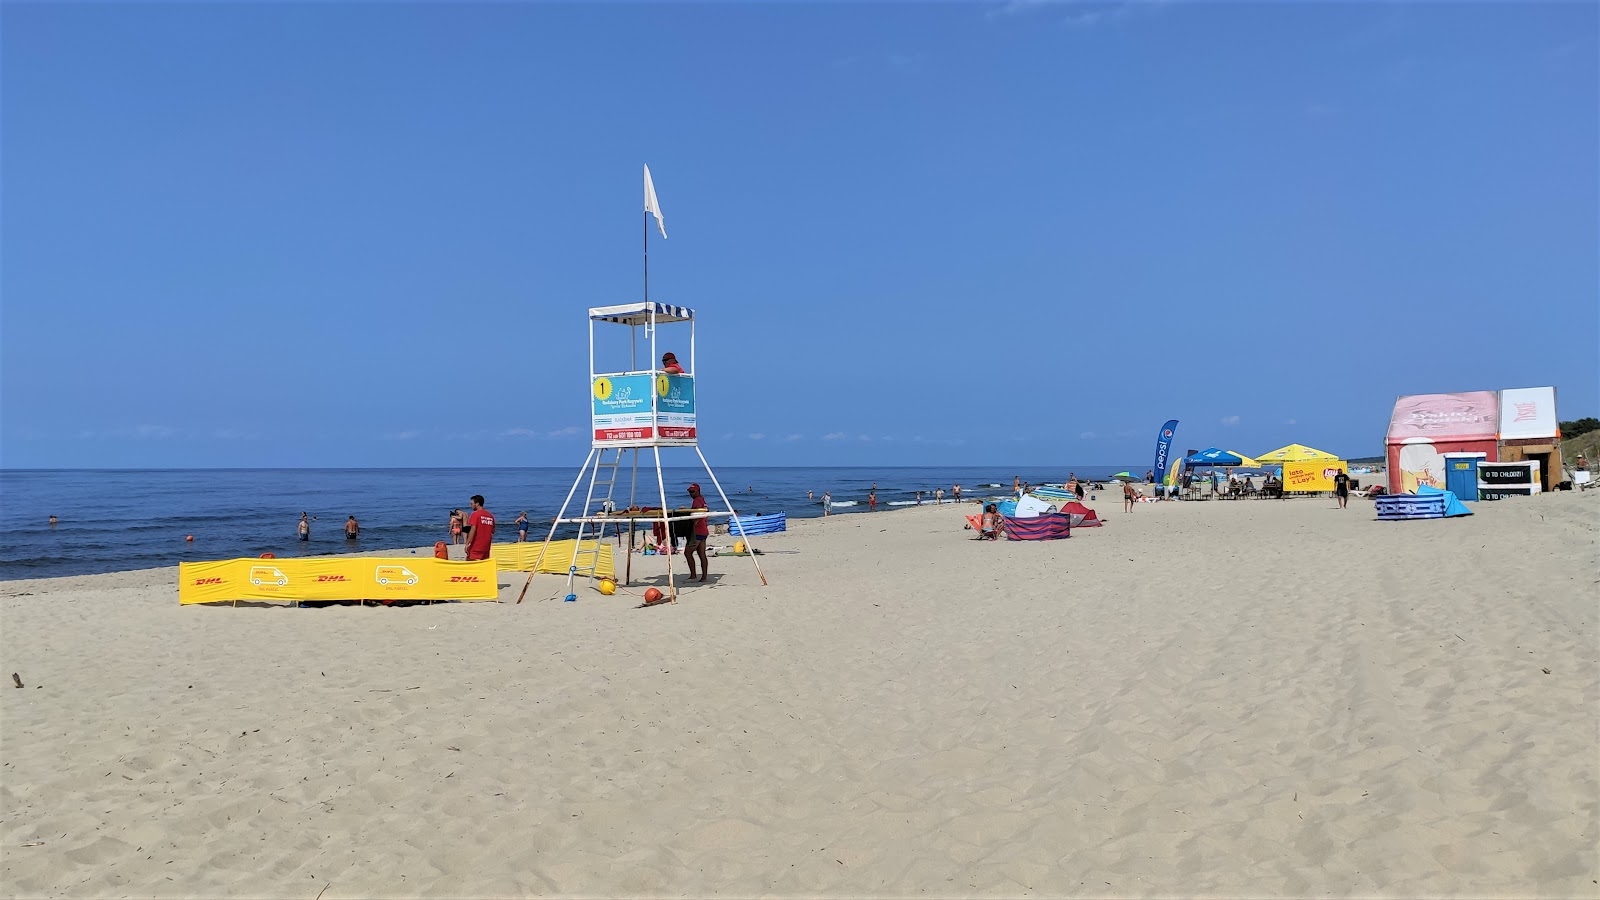 Foto de Piaski Rybacka beach ubicado en área natural